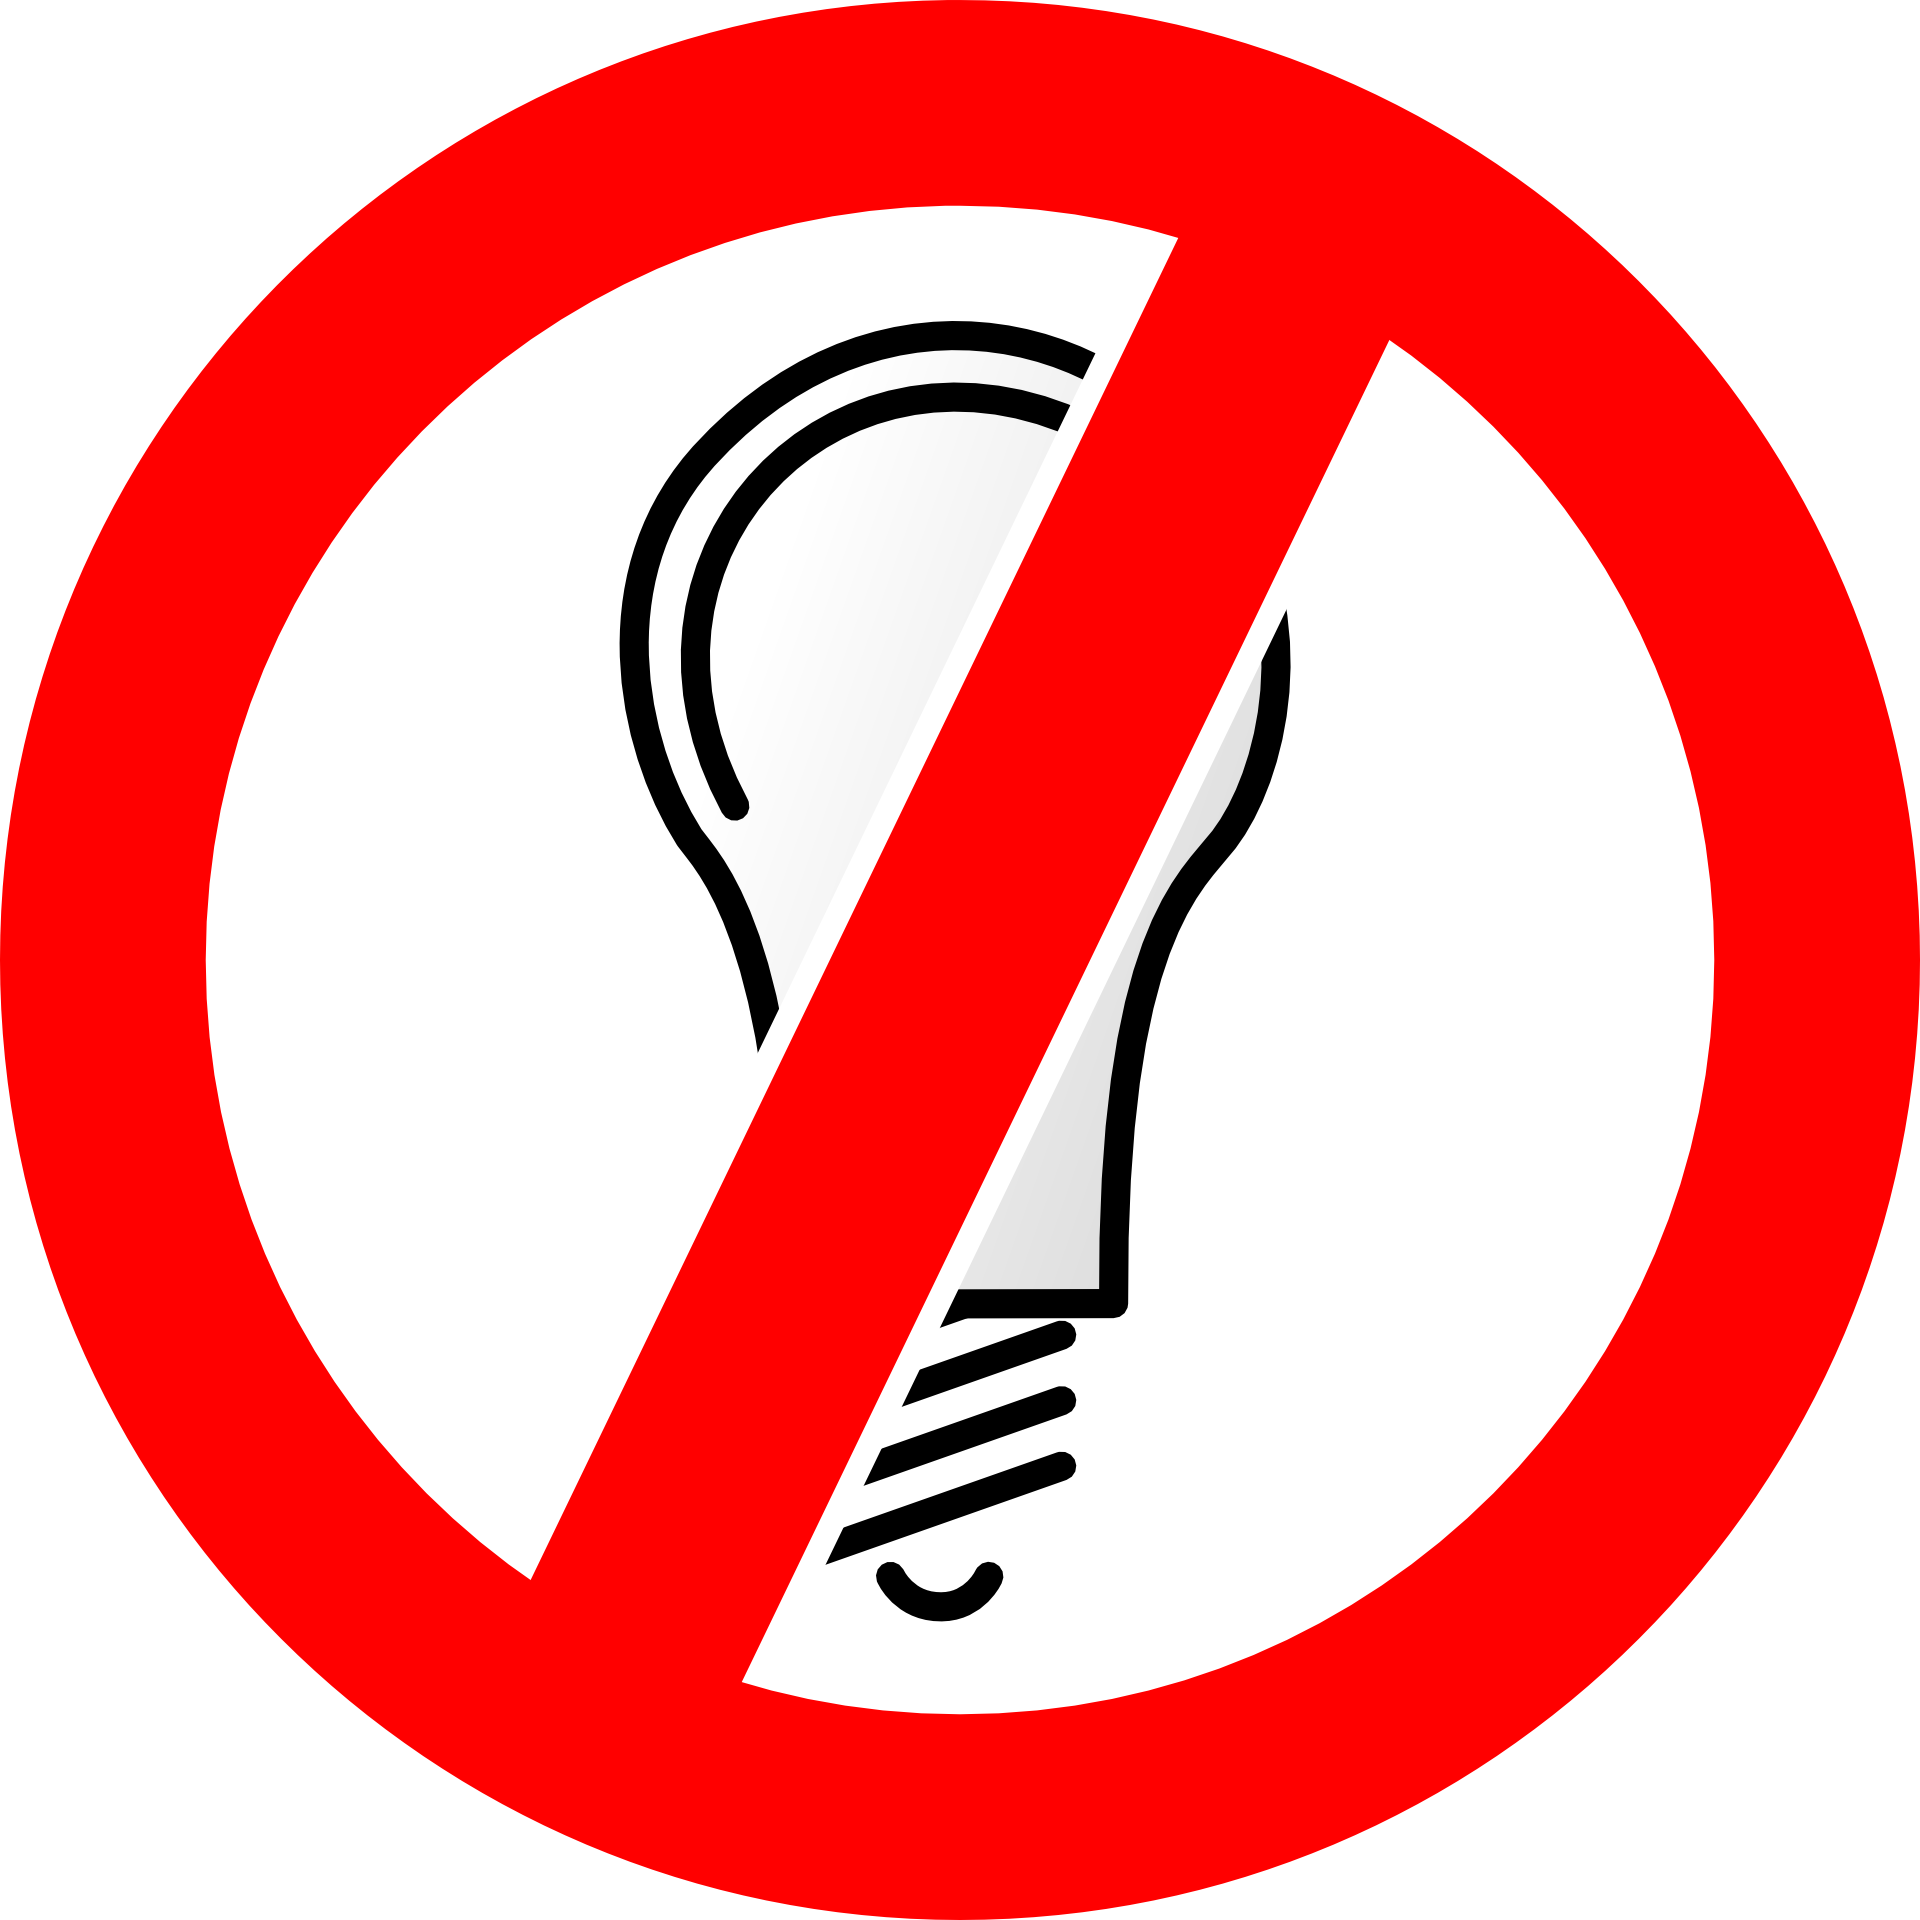 Выключи свет включись. Зачеркнутая лампочка. Запрещено электричество. Знак электричества. Отключи электричество знак.